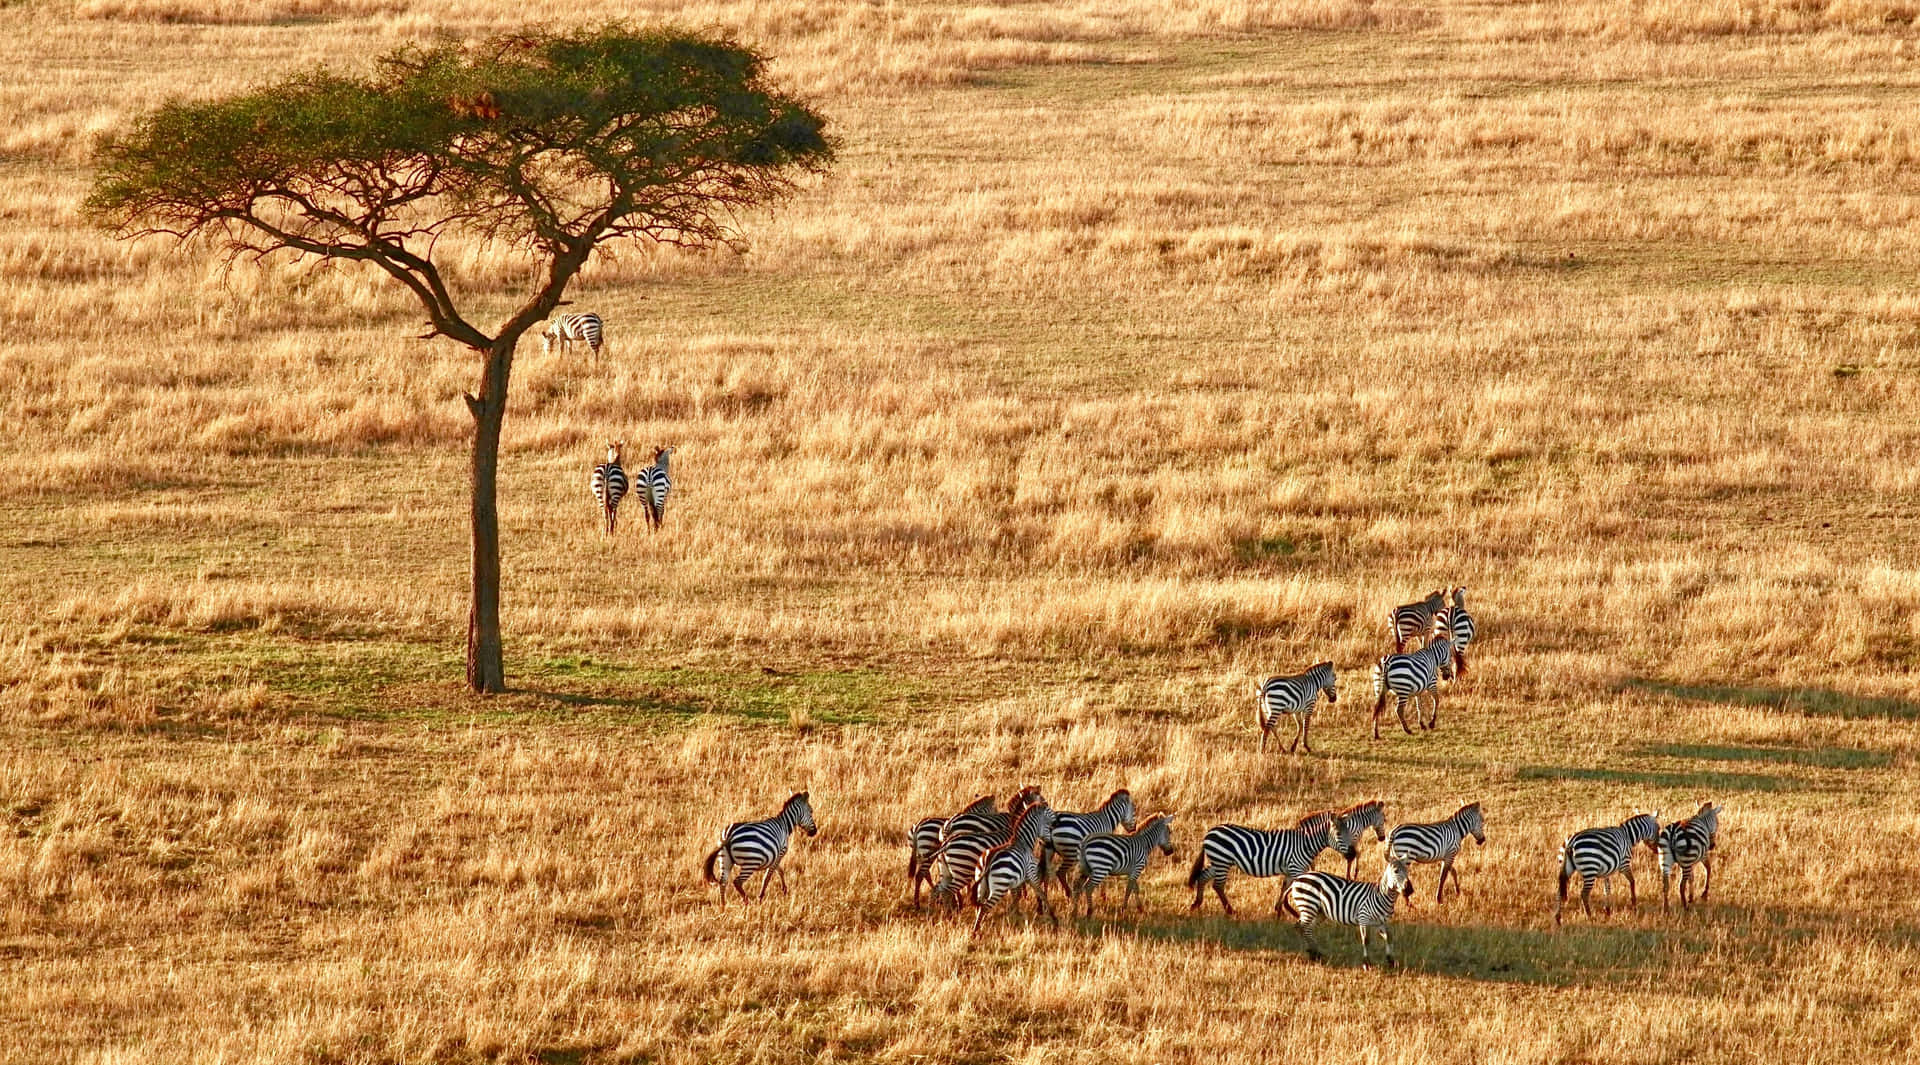 Serengeti National Park Zebras Wallpaper